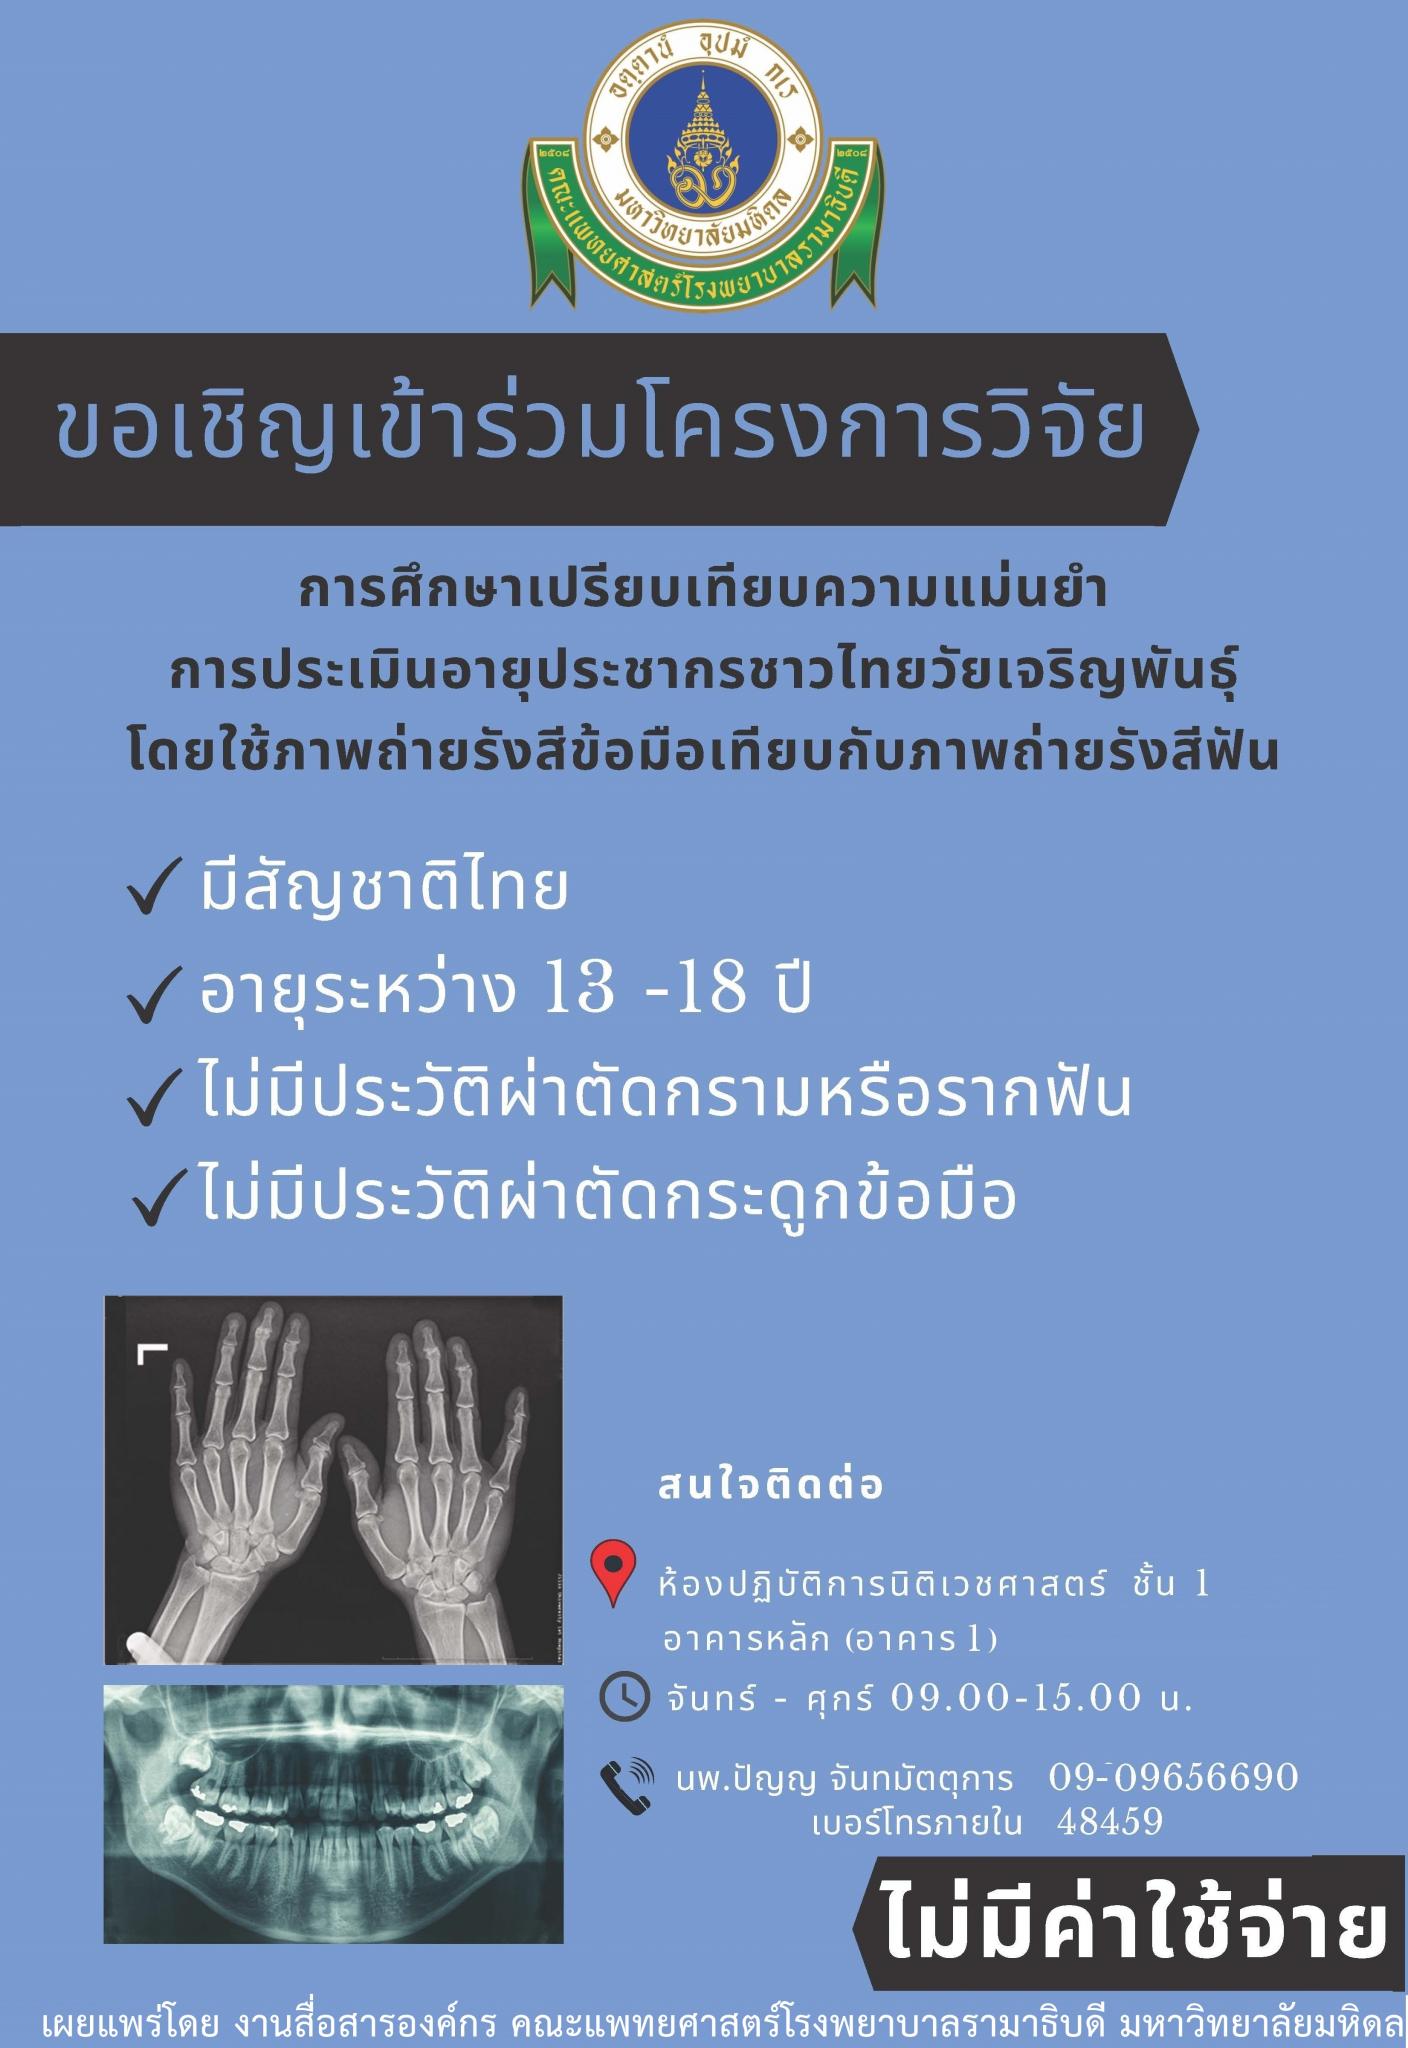 ขอเชิญเข้าร่วมโครงการวิจัย การศึกษาเปรียบเทียบความแม่นยำ การประเมินอายุประชากรชาวไทยวัยเจริญพันธุ์ โดยใช้ภาพถ่ายรังสีข้อมือเทียบกับภาพถ่ายรังสีฟัน